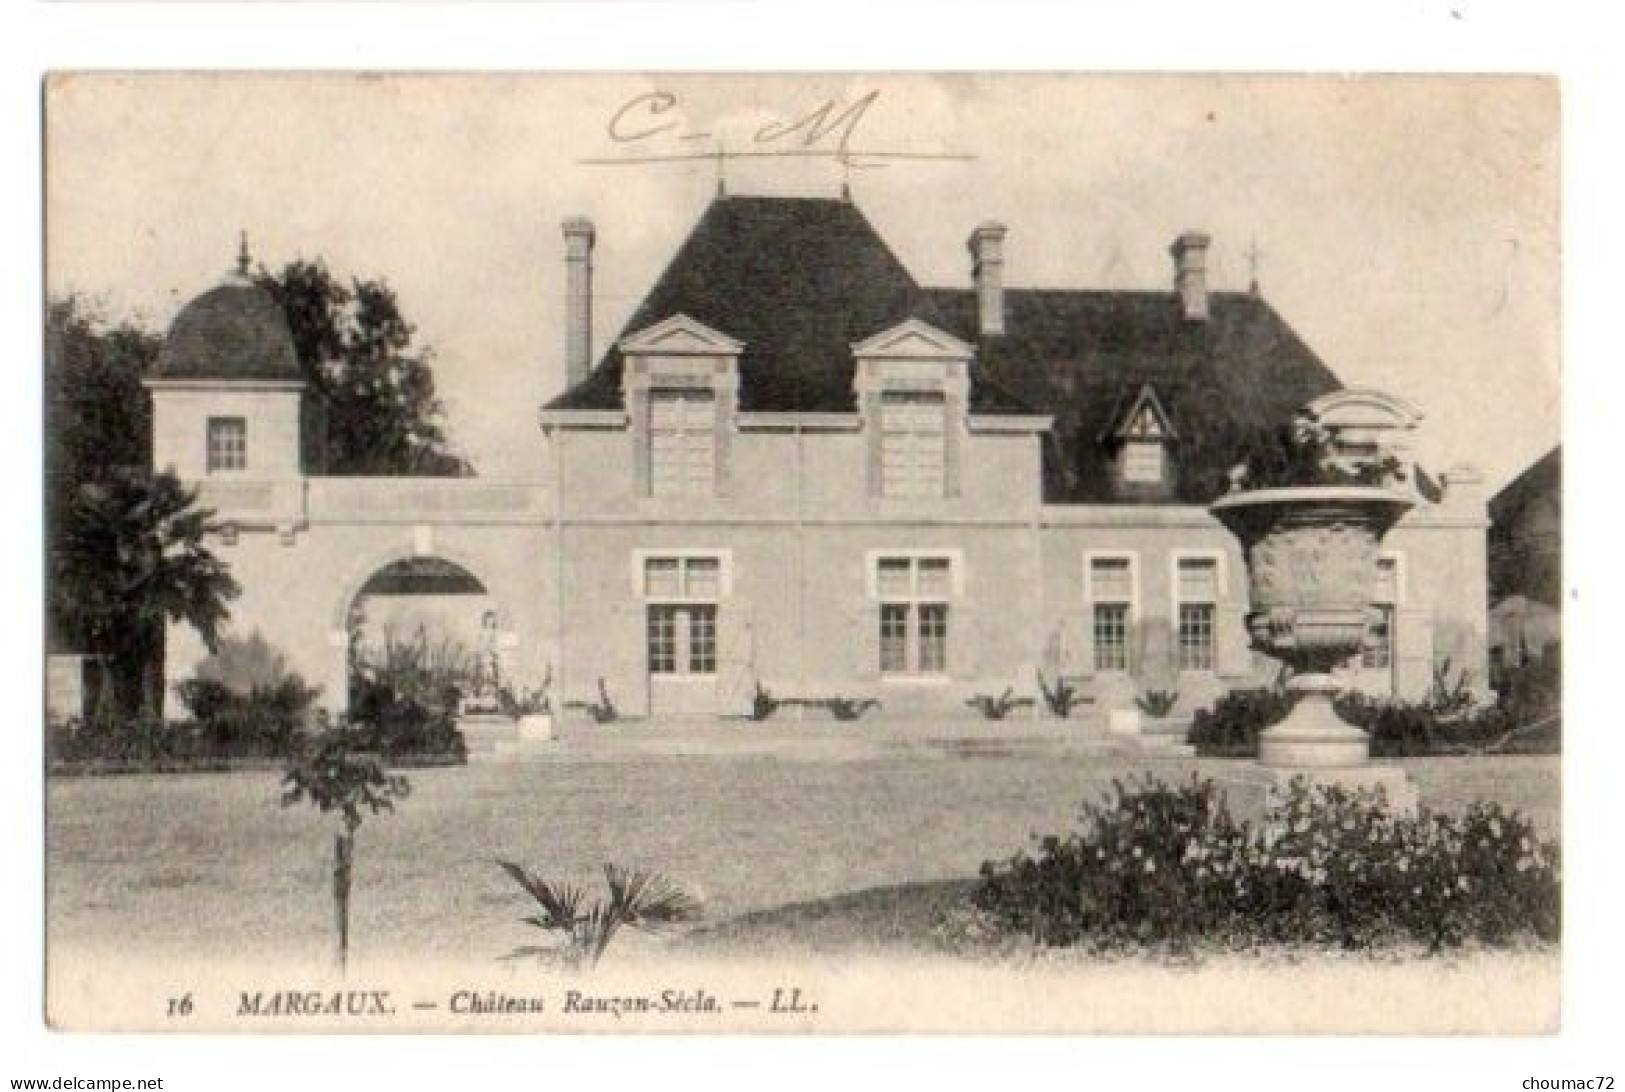 (33) 547, Margaux, LL 16, Château Rauzan-Sécla - Margaux